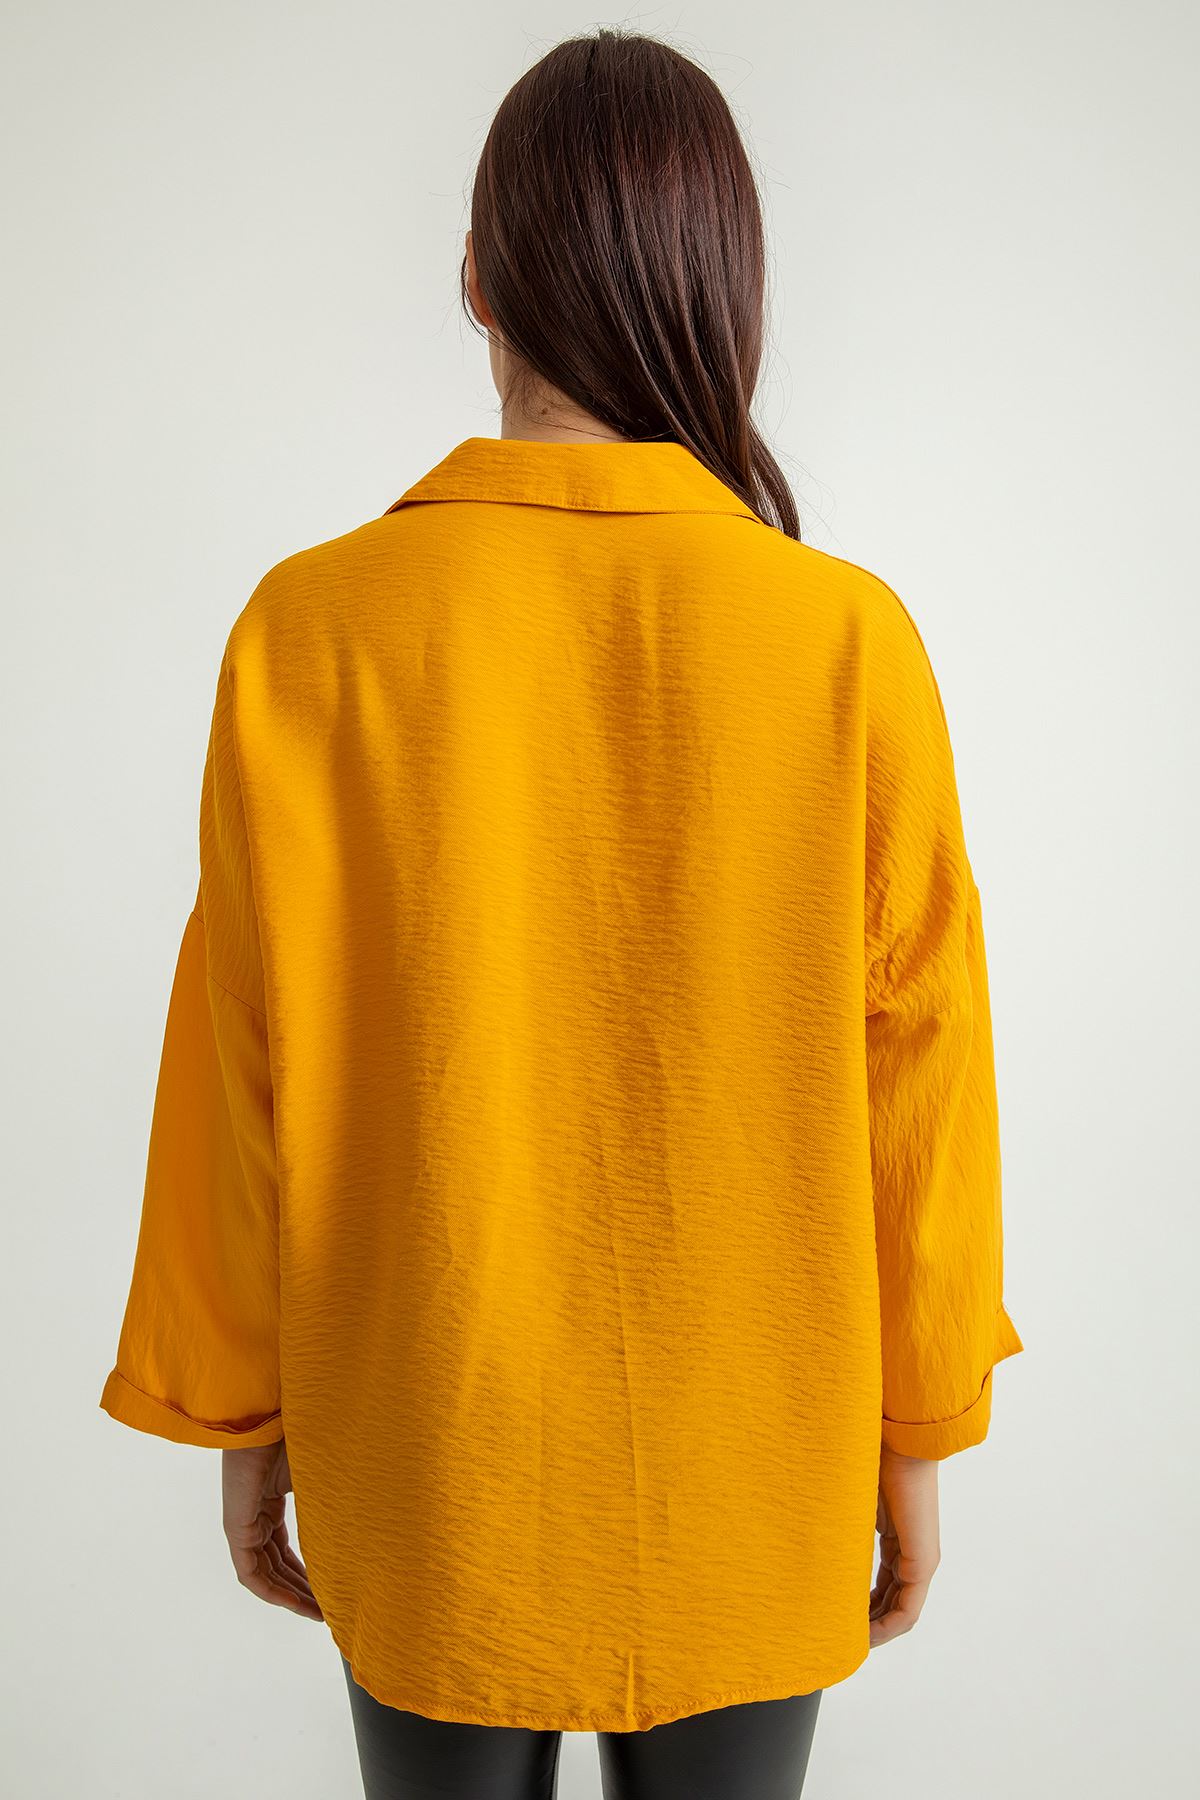 Aerobin Fabric Long Sleeve Shirt Collar Below Hip Oversize Women'S Shirt - Mustard